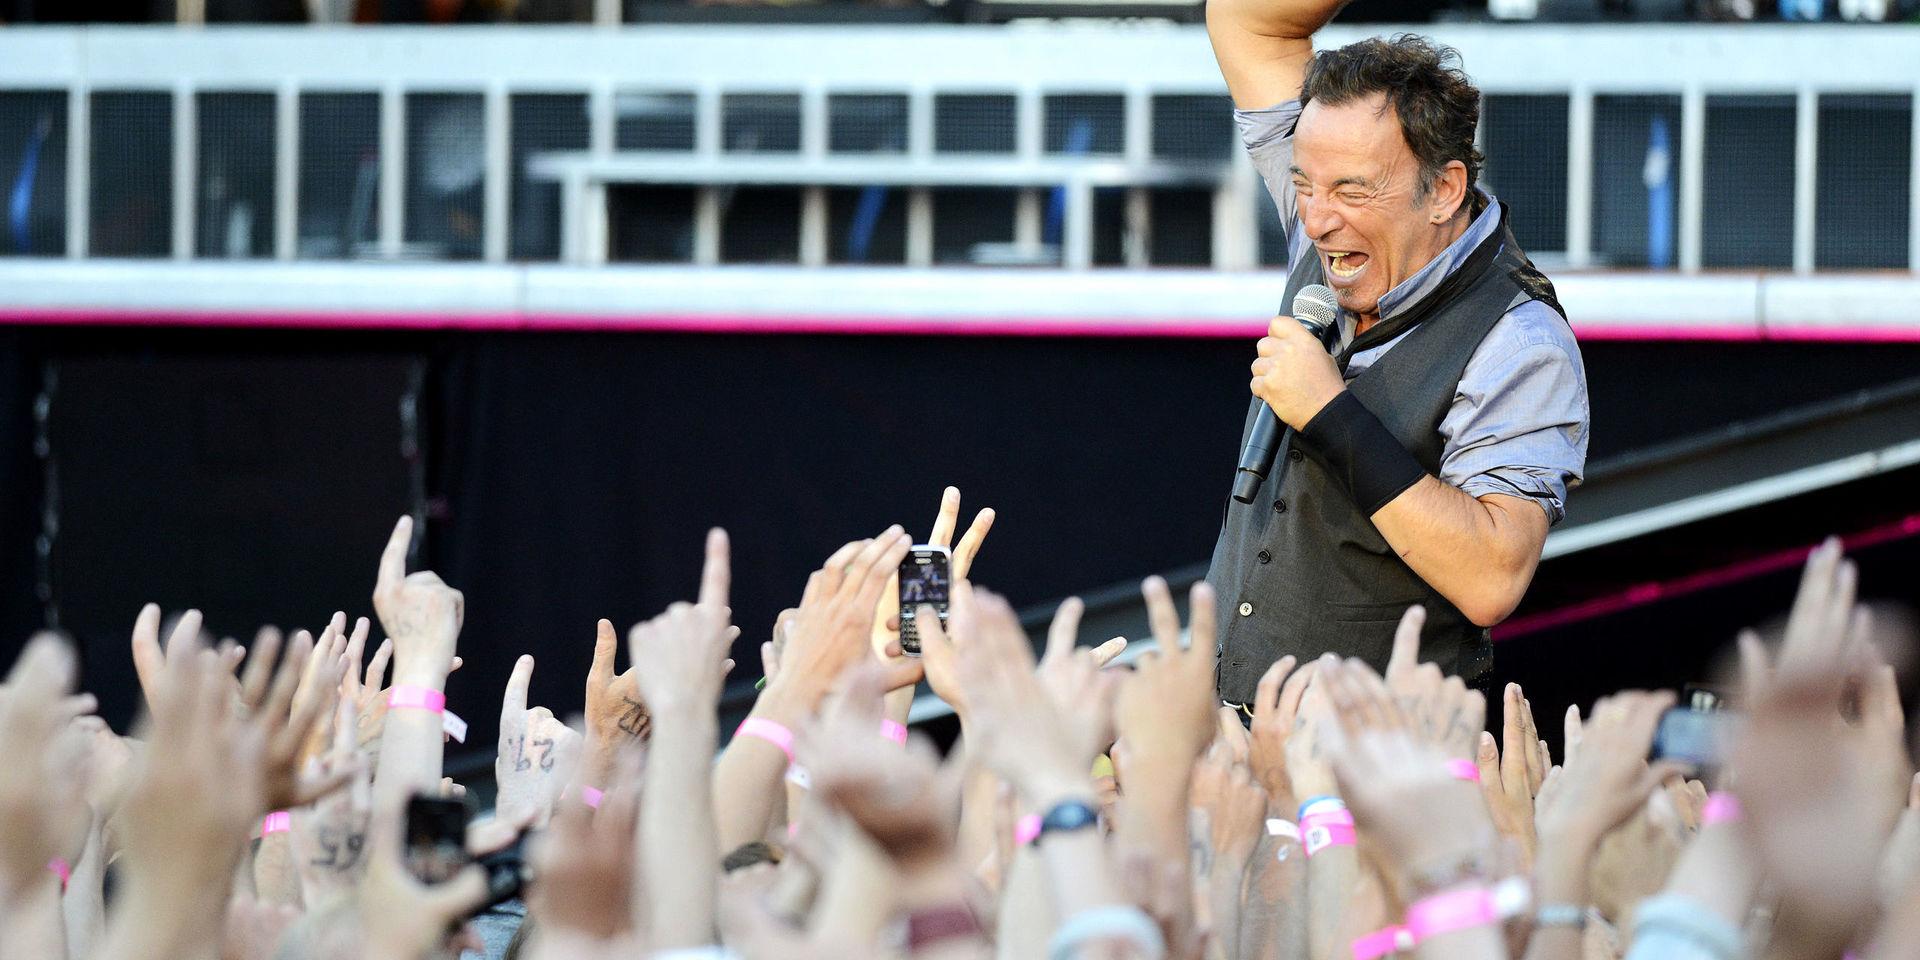 Bruce Springsteen på Ullevis scen 2012. Nu kommer en av de båda konserterna på platta.